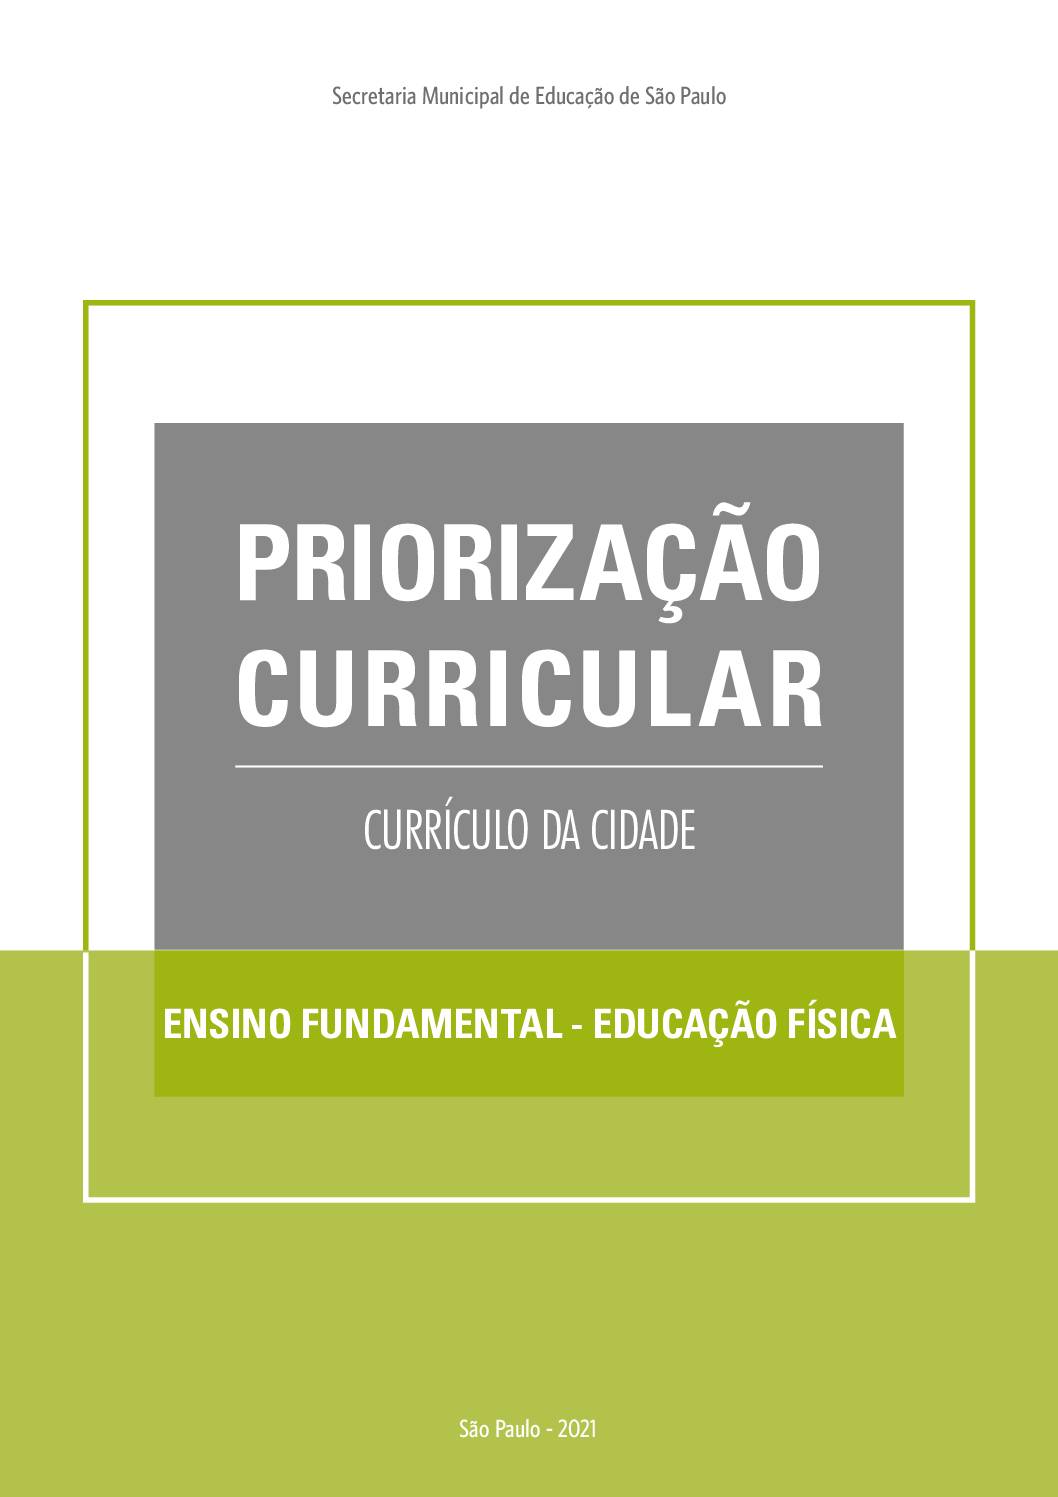 Publicação que apresenta os objetivos de aprendizagem prioritários do Currículo da Cidade de Educação Física para o Ensino Fundamental.